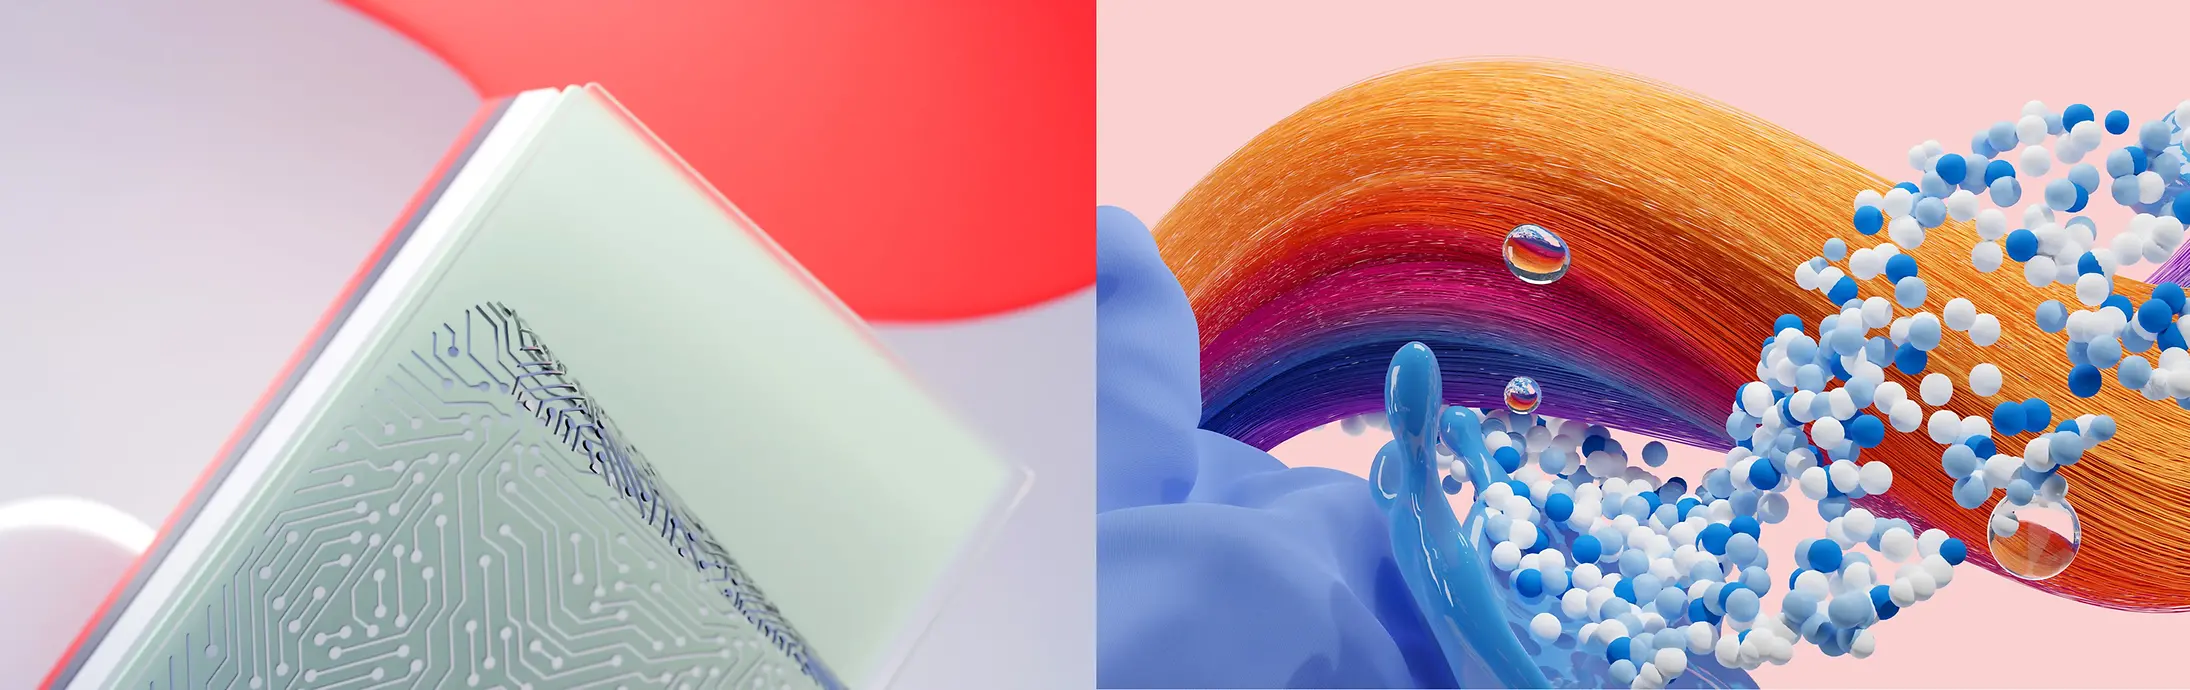 Immagine astratta che rappresenta le divisioni di Henkel Adhesive Technologies, Hair and Laundry & Home Care.